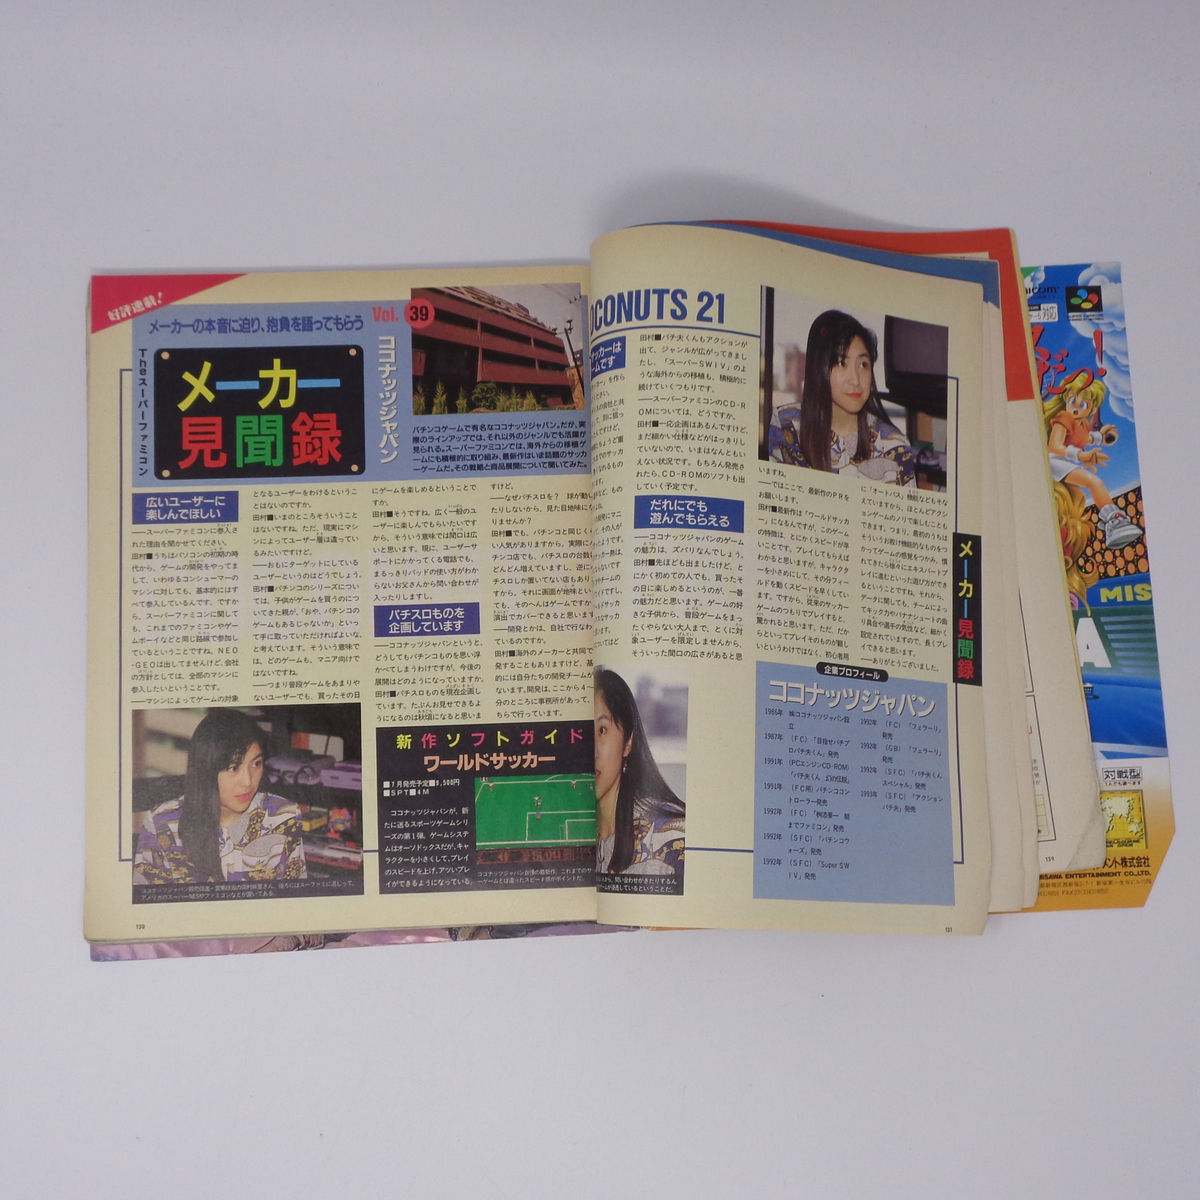 【表紙,裏表紙欠損】The SuperFamicom 1993年7月19日号 VOL.12 別冊付録無し /Theスーパーファミコン/ゲーム雑誌[Free Shipping]_画像7